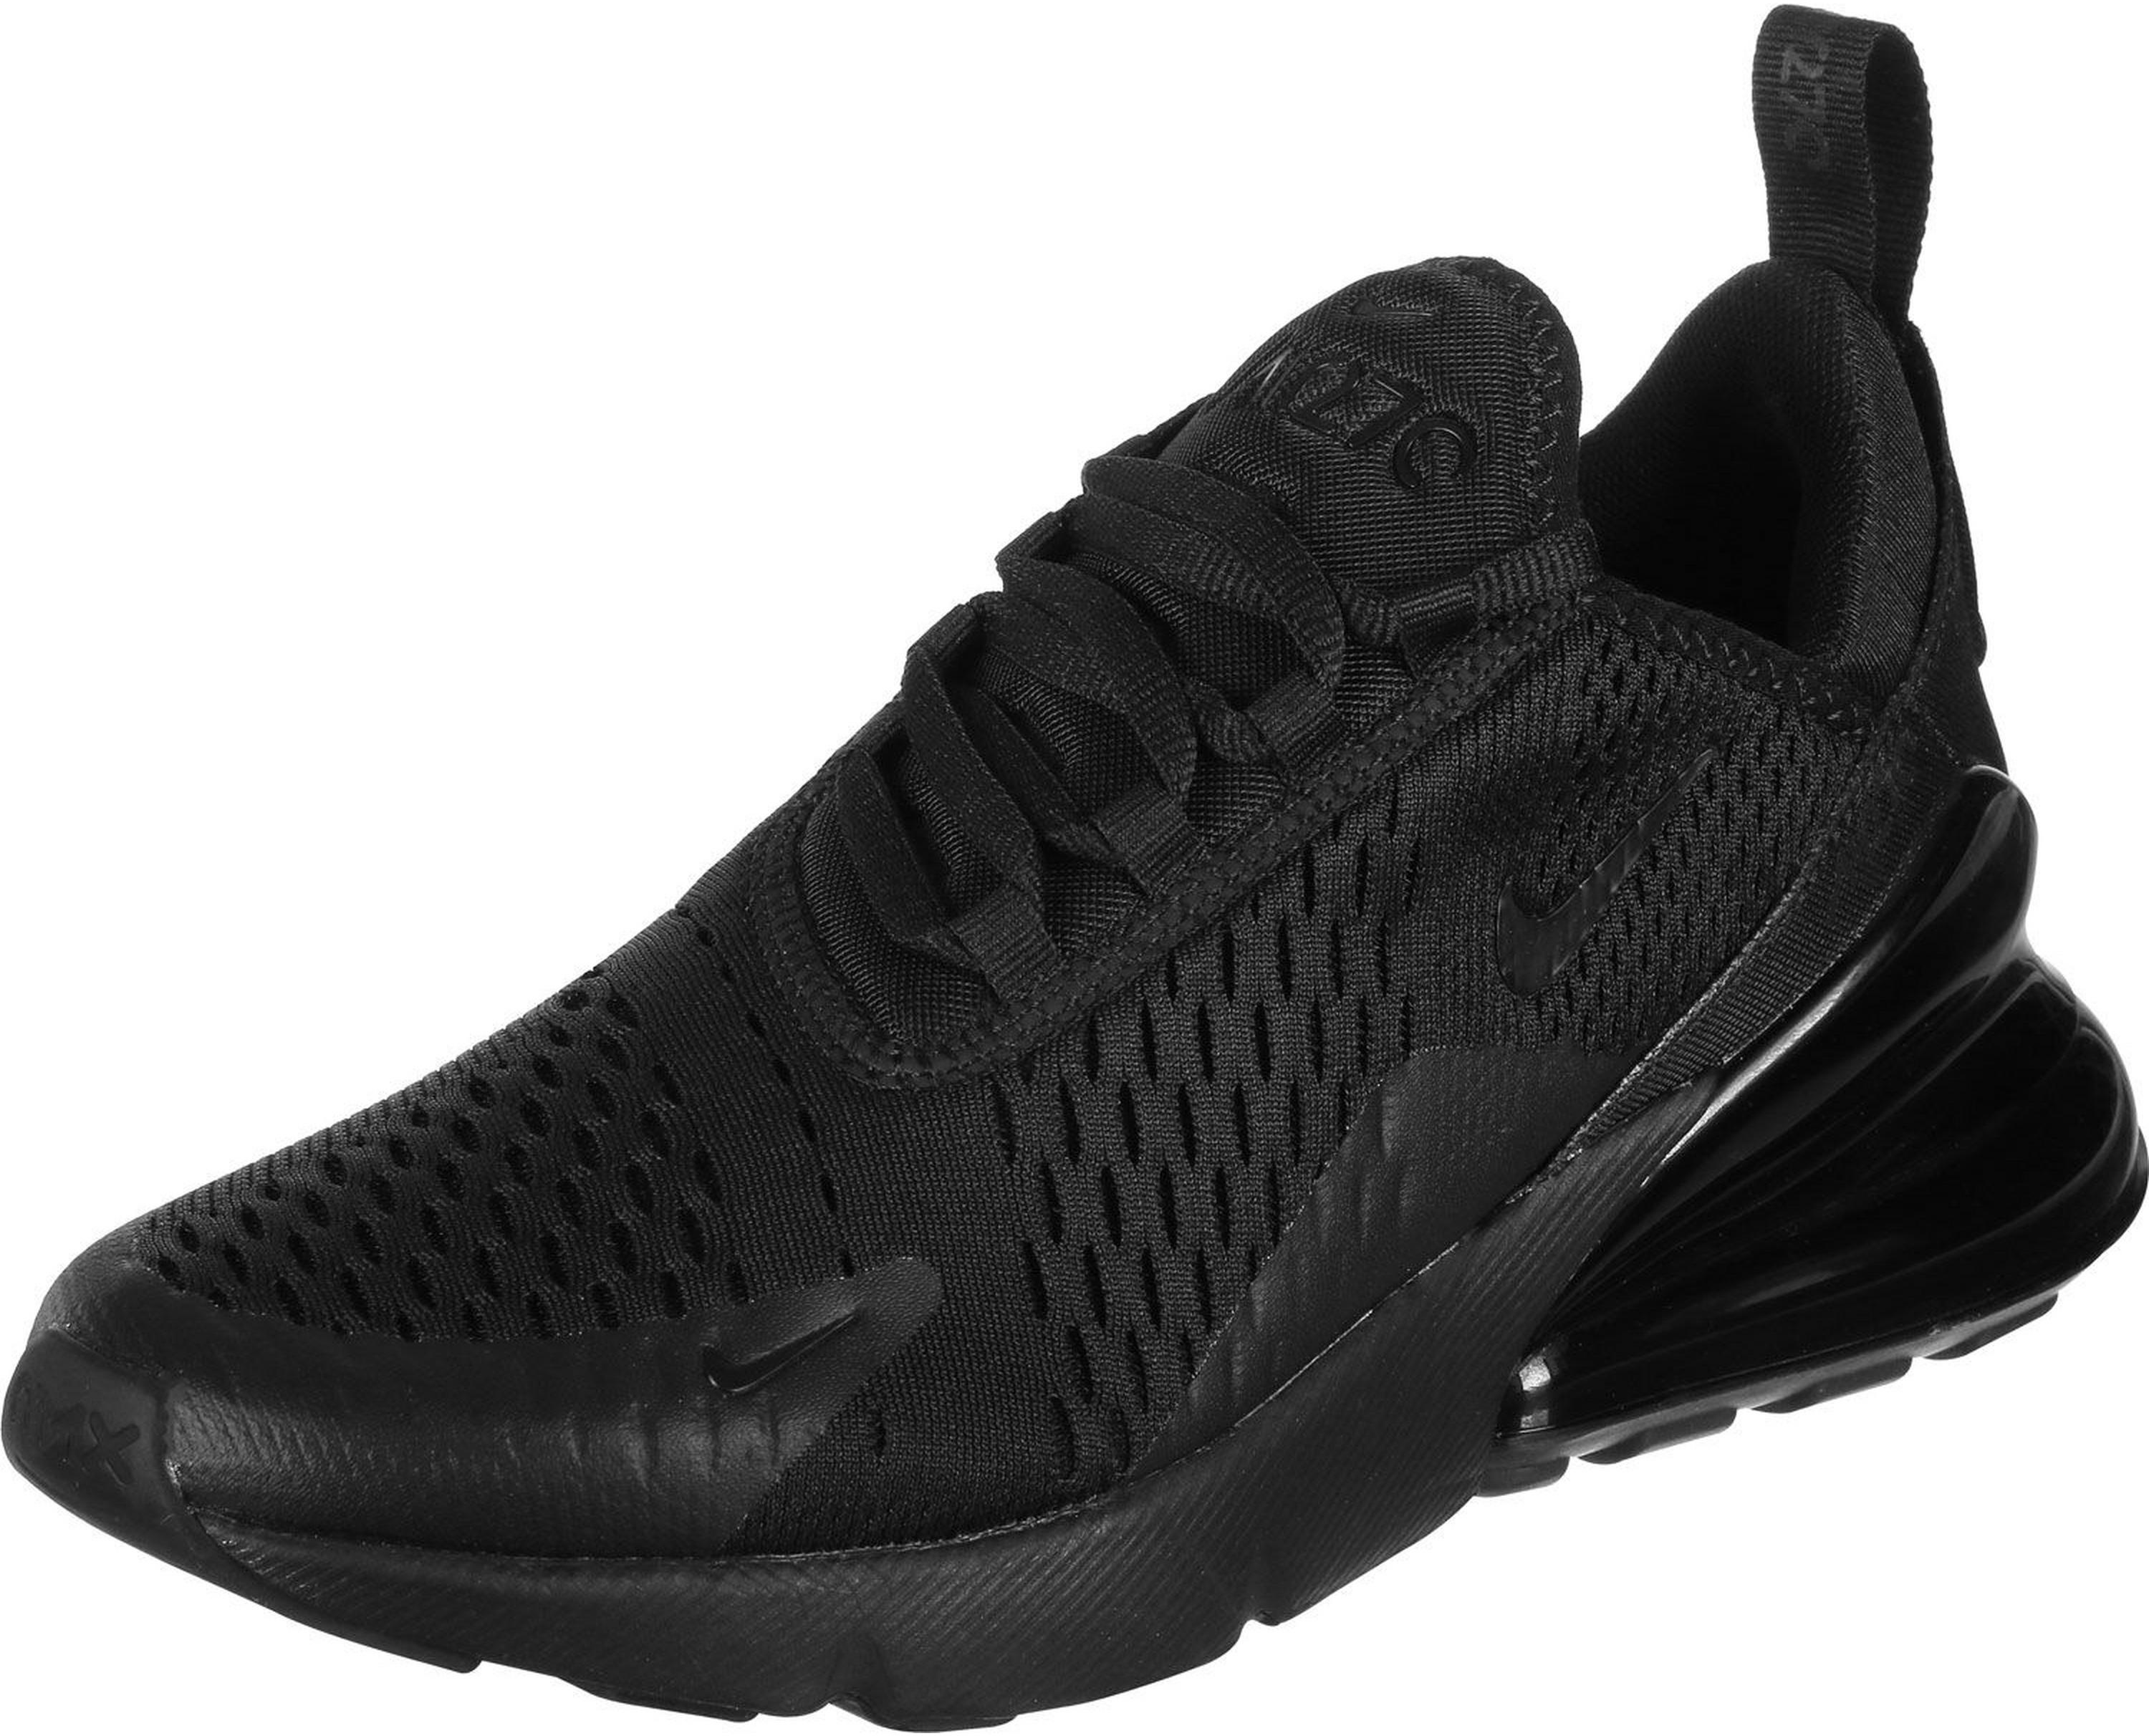 Nike Air Max 270 Sneaker Herren in black-black-black, Größe 42 1/2 - schwarz